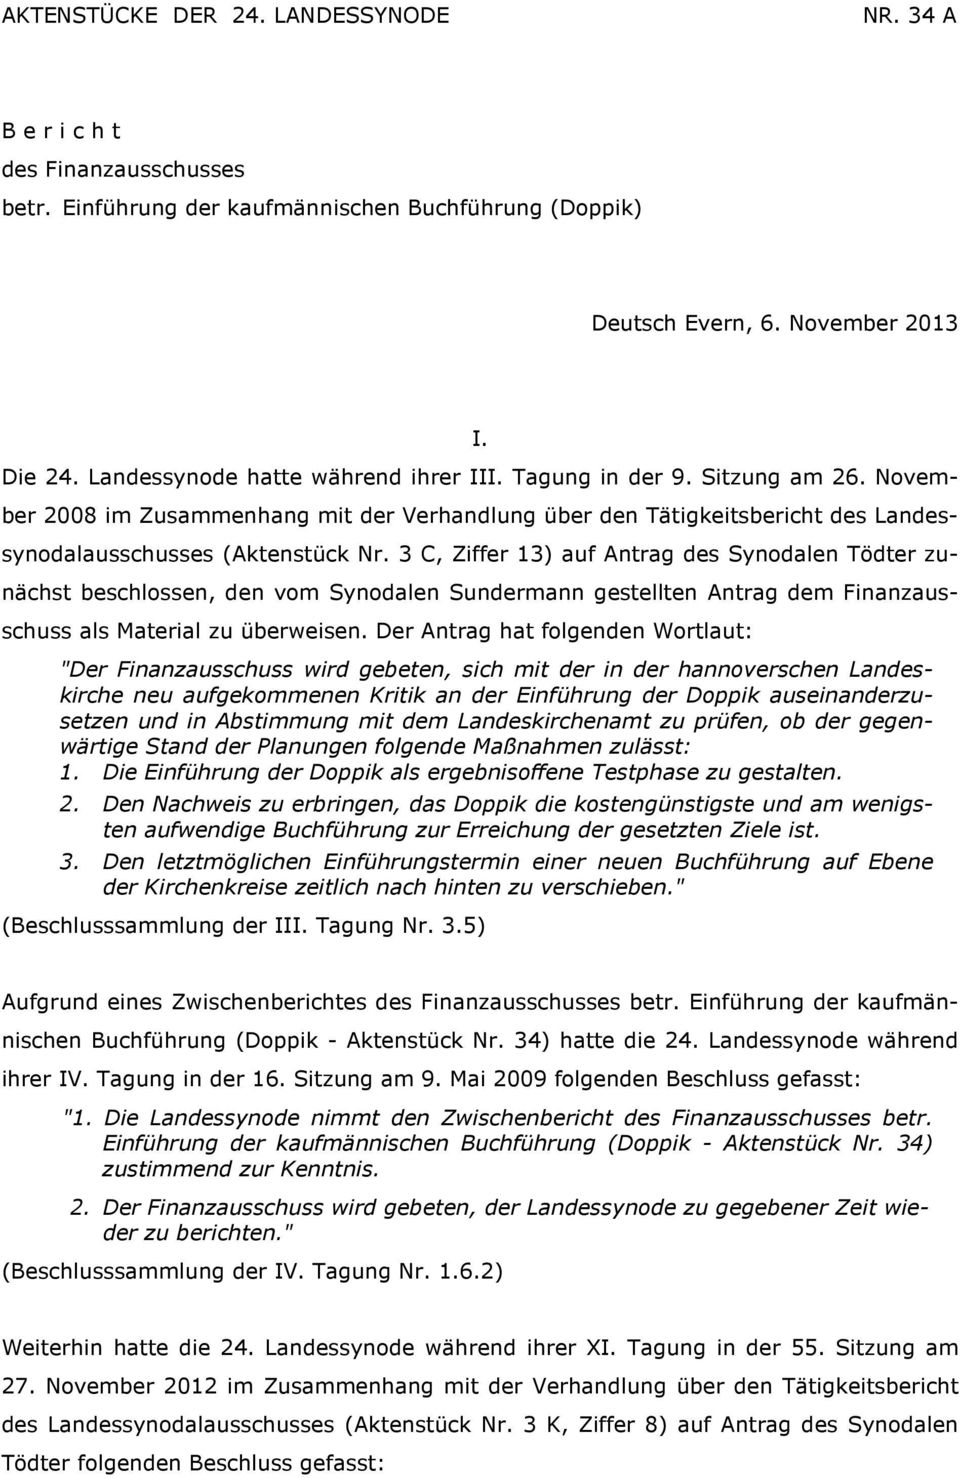 3 C, Ziffer 13) auf Antrag des Synodalen Tödter zunächst beschlossen, den vom Synodalen Sundermann gestellten Antrag dem Finanzausschuss als Material zu überweisen.